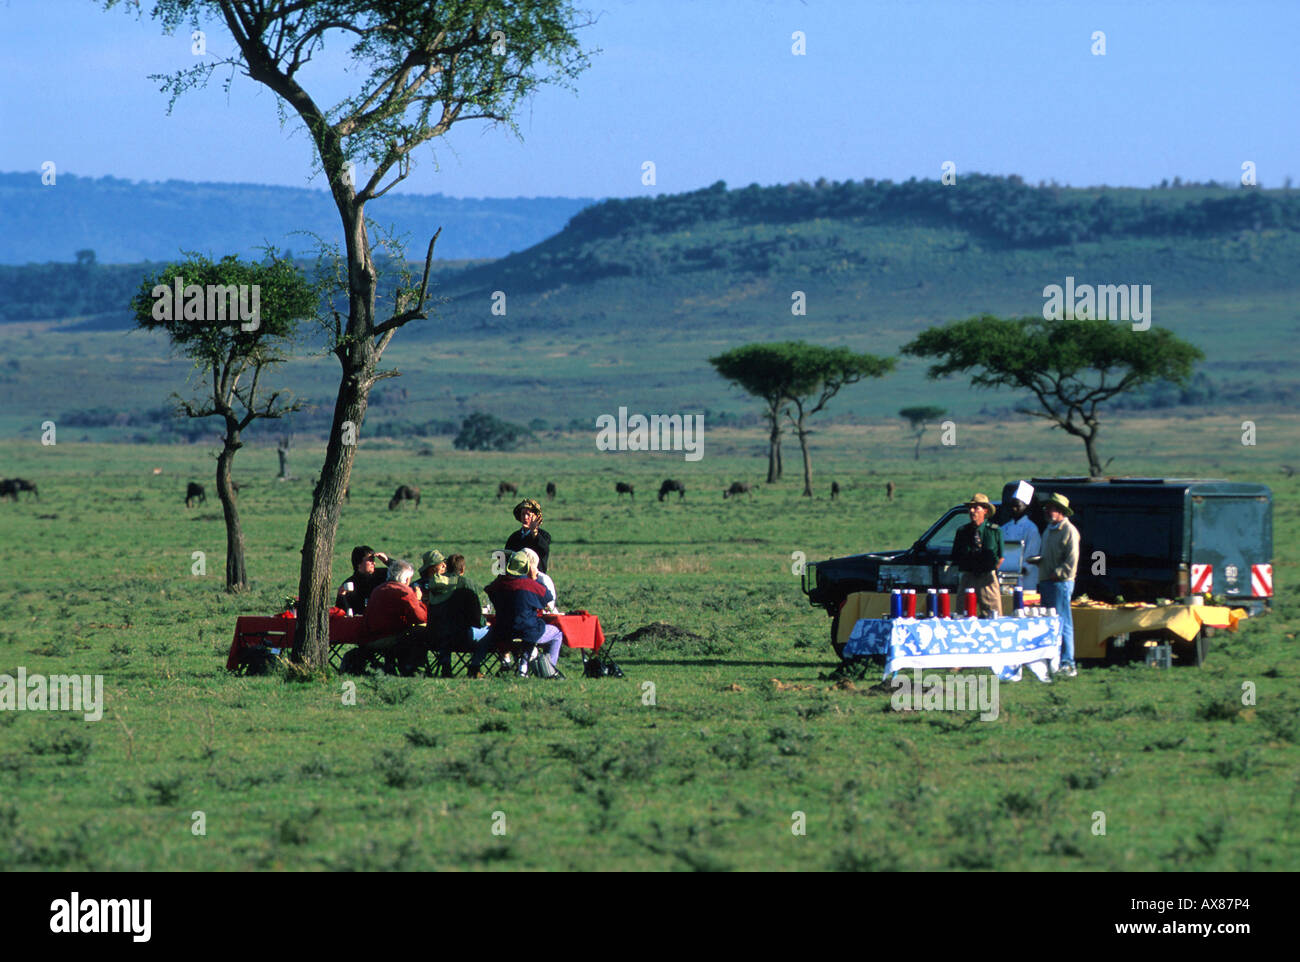 Fruehstueck dans Ballonflug Transwold nach Steppe, safaris, les gnous dans Distanz Masai Mara Nat. Réserver, Kenia Banque D'Images